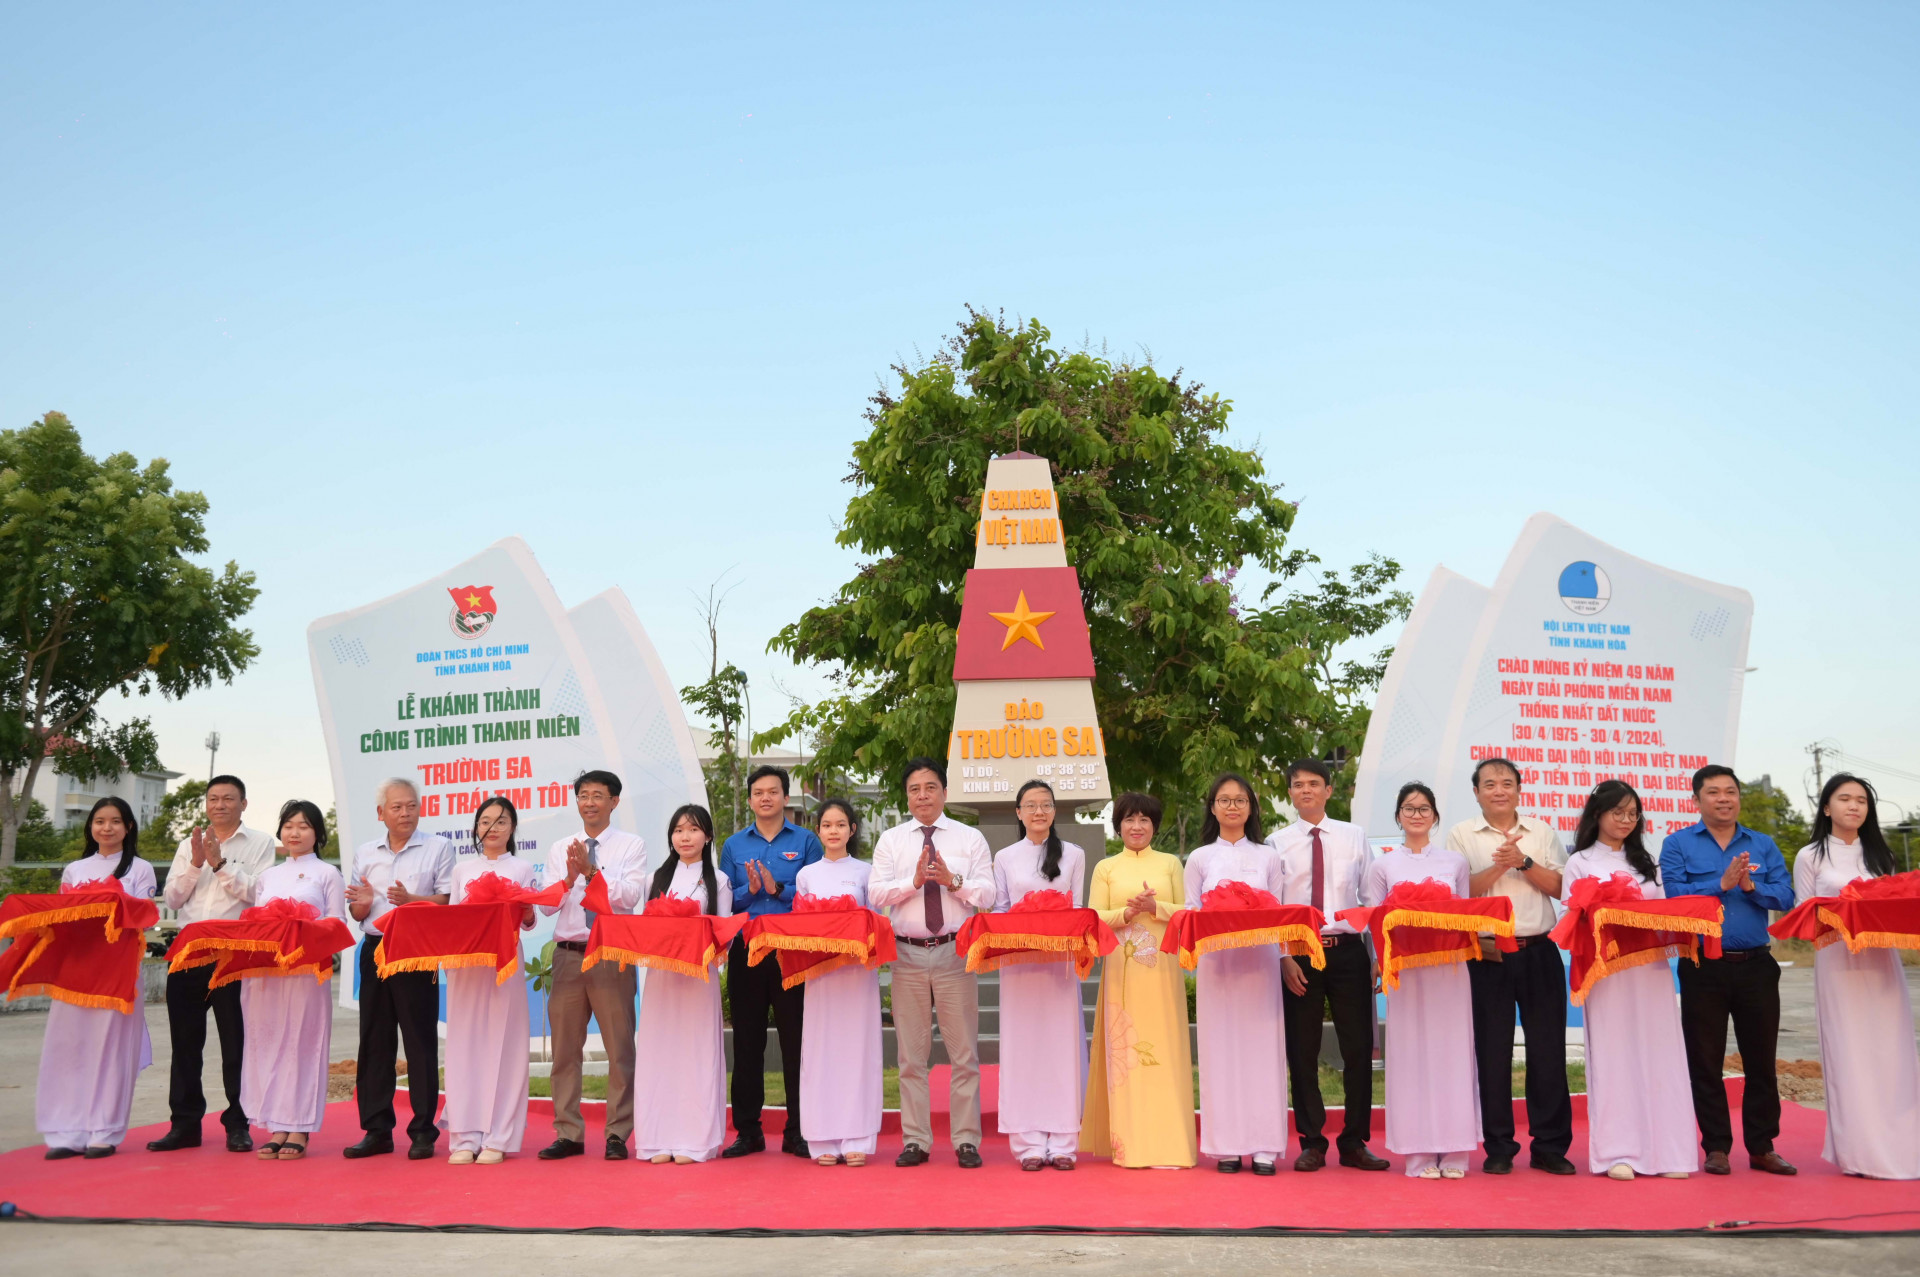 Đồng chí Nguyễn Khắc Toàn cùng các đại biểu cắt băng khánh thành công trình thanh niên.